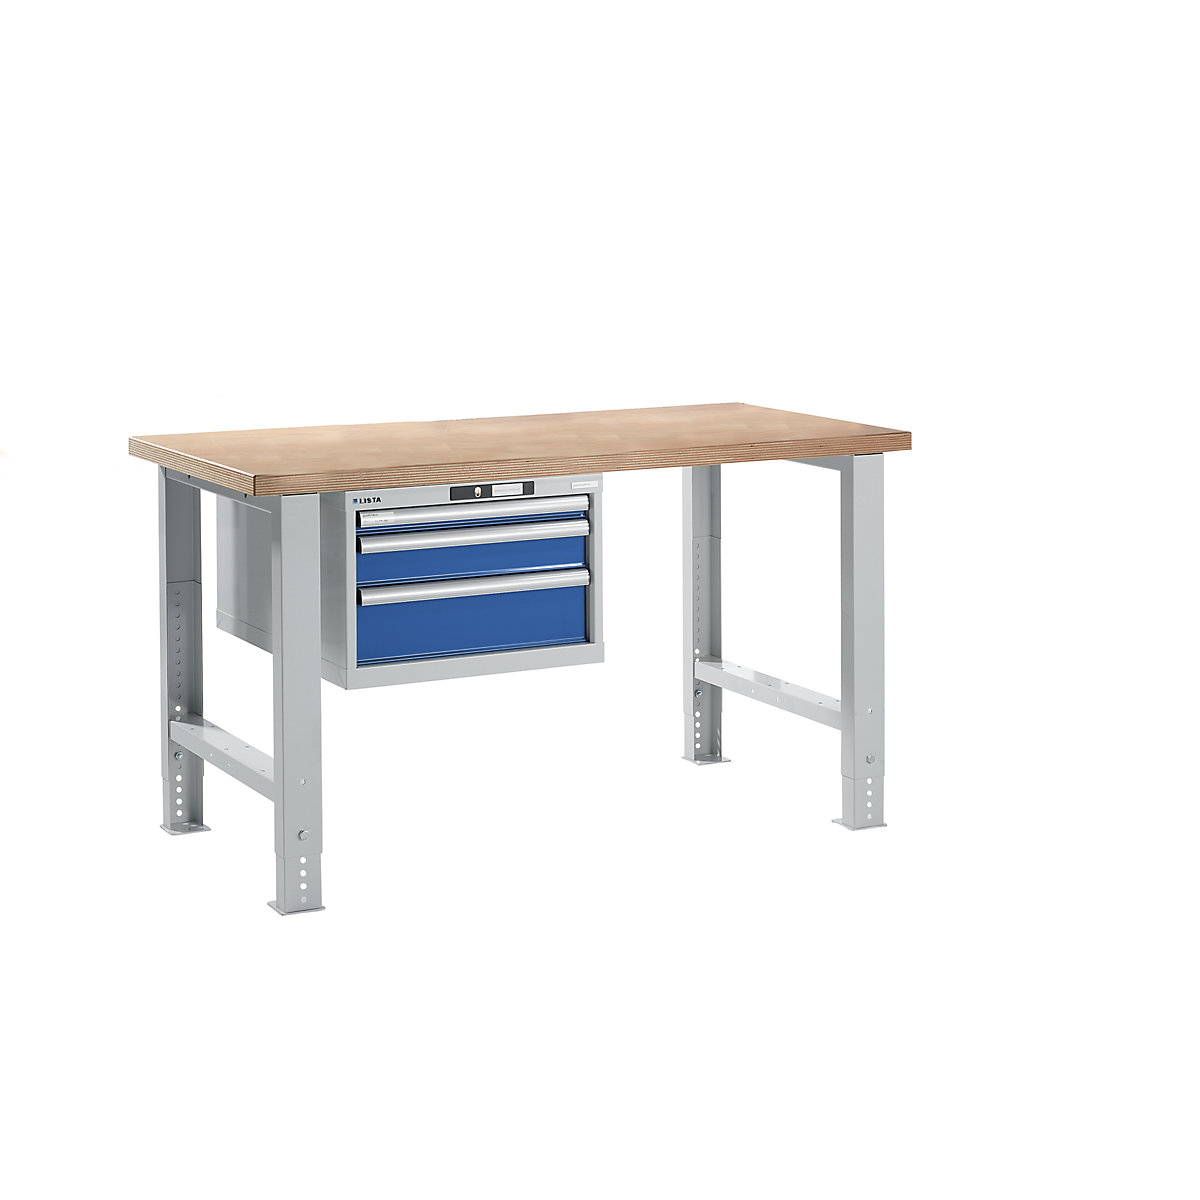 Dielenský stôl v stavebnicovom systéme – LISTA, výška 740 – 1090 mm, závesná skriňa, 3 zásuvky, enciánová modrá, šírka stola 1500 mm-17